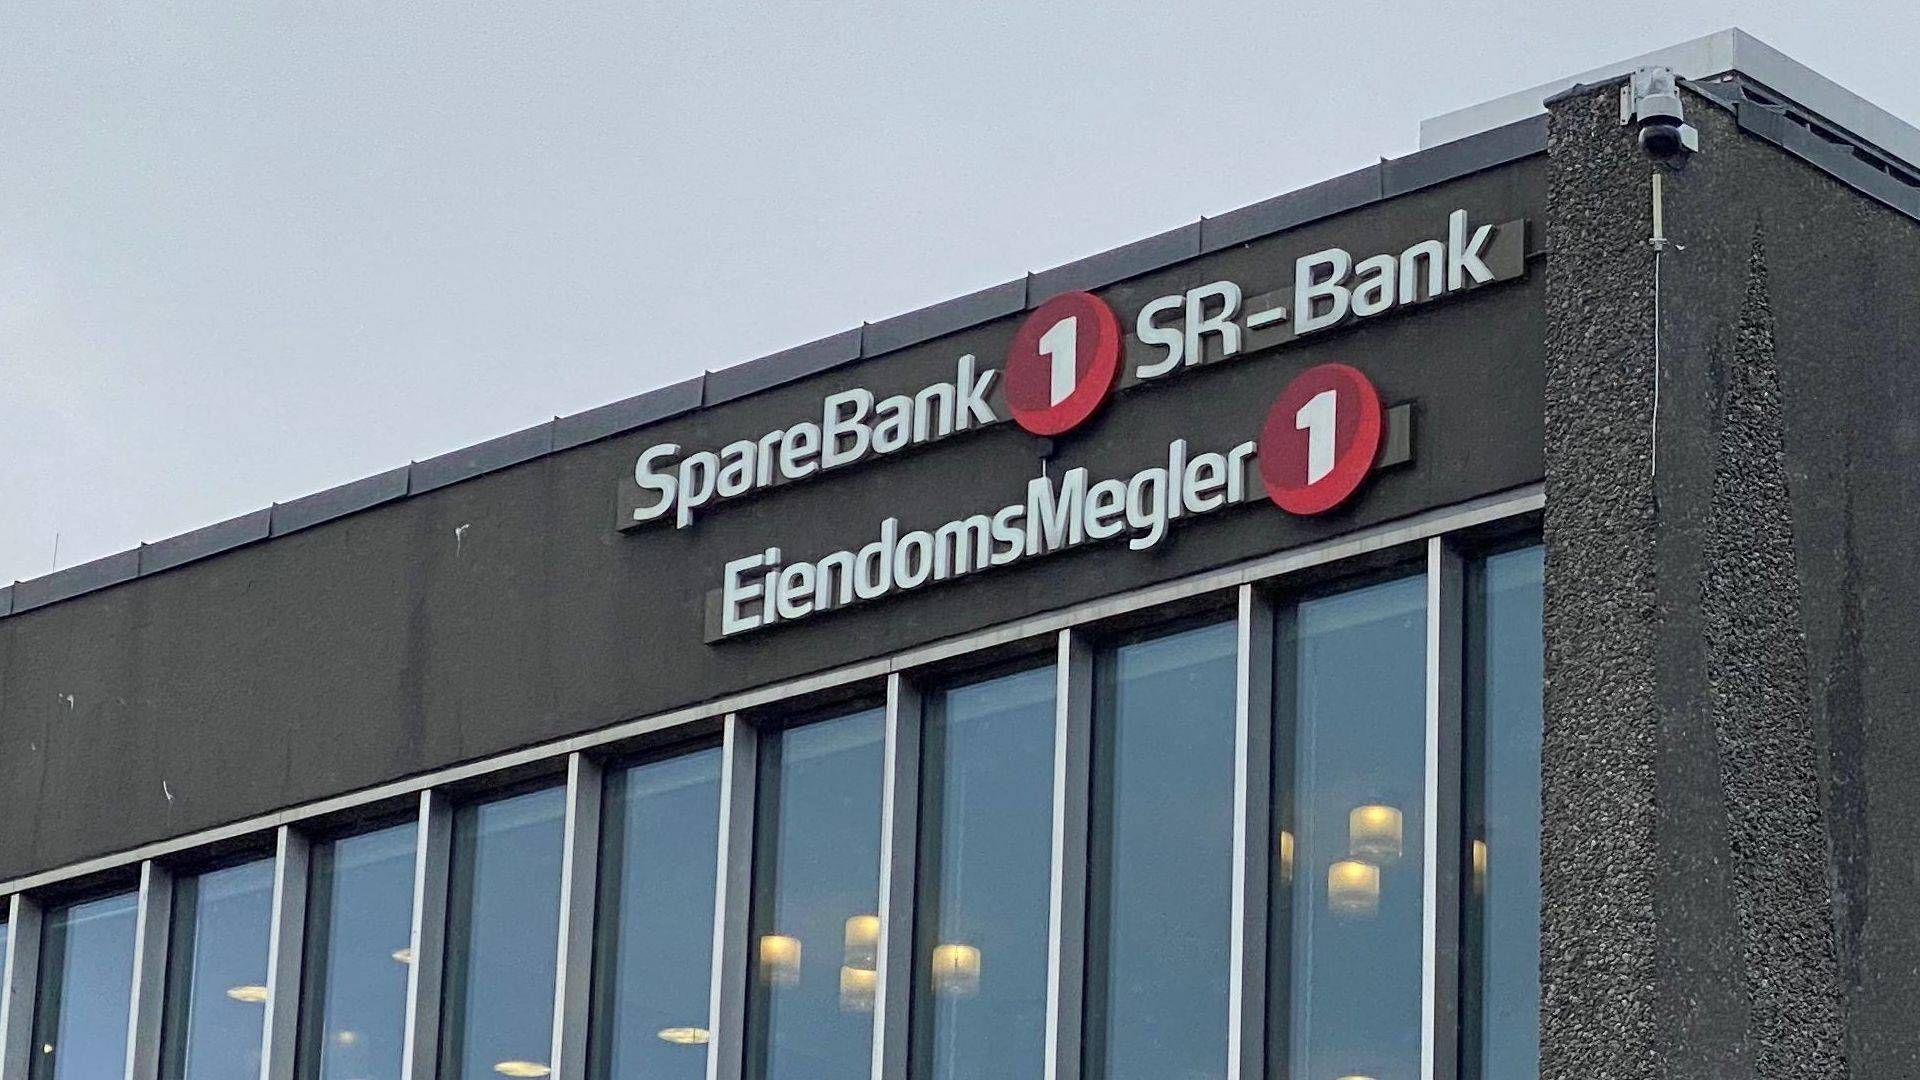 Sparebank 1 SR-Bank vil sammen med Sparebank 1 Sorøst-Norge skabe Norges største sparekasse. | Foto: Magnus Eidem